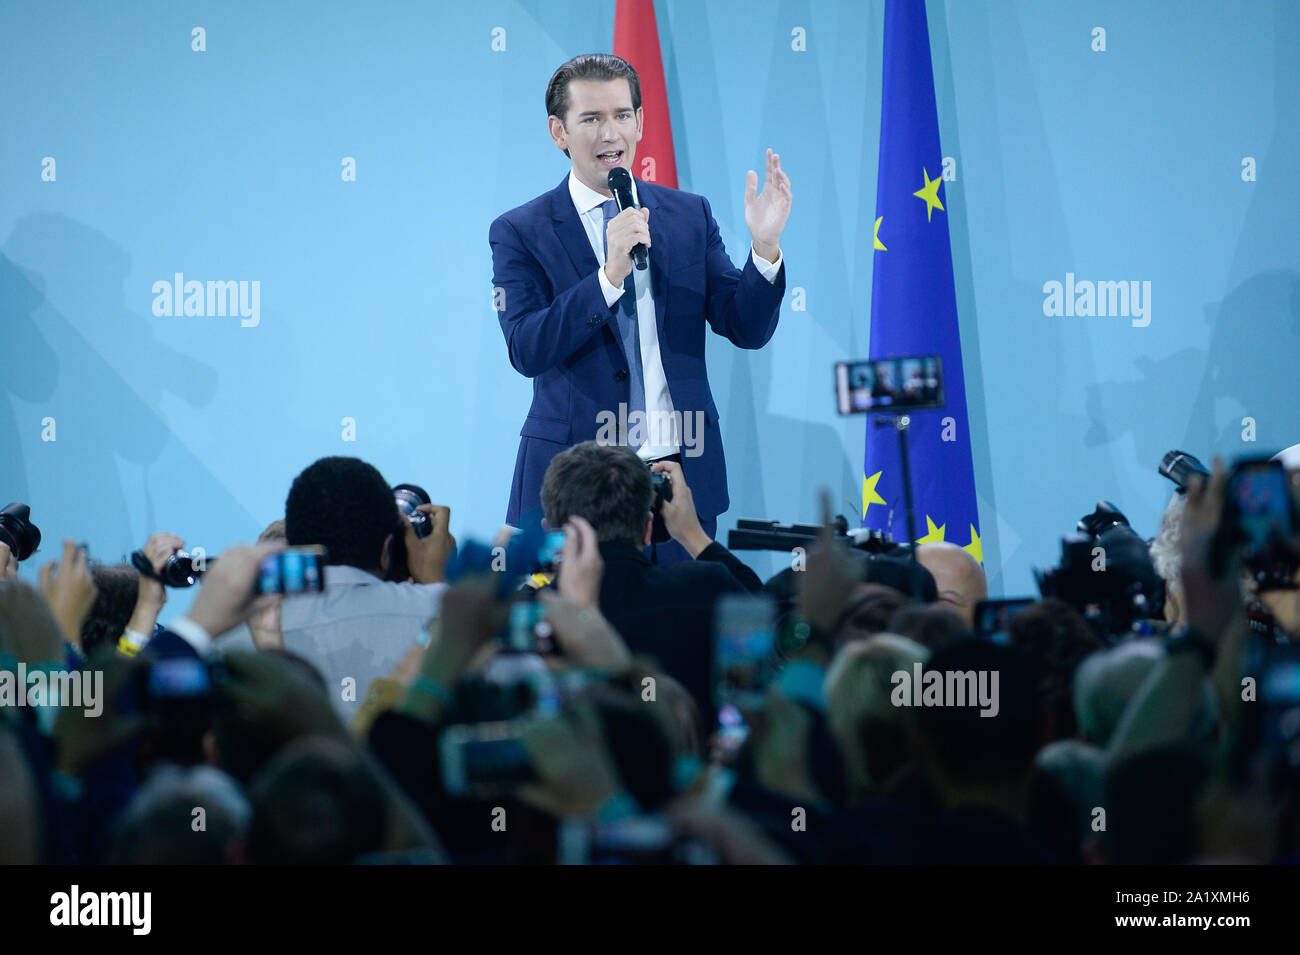 Le chef du parti populaire autrichien, Sebastian Kurz célèbre le premier pool résultats pour le jonc d'élections parlementaires. La première poule résultats ont donné 36  % pour le parti populaire autrichien, d'être loin devant les autres partis. Banque D'Images